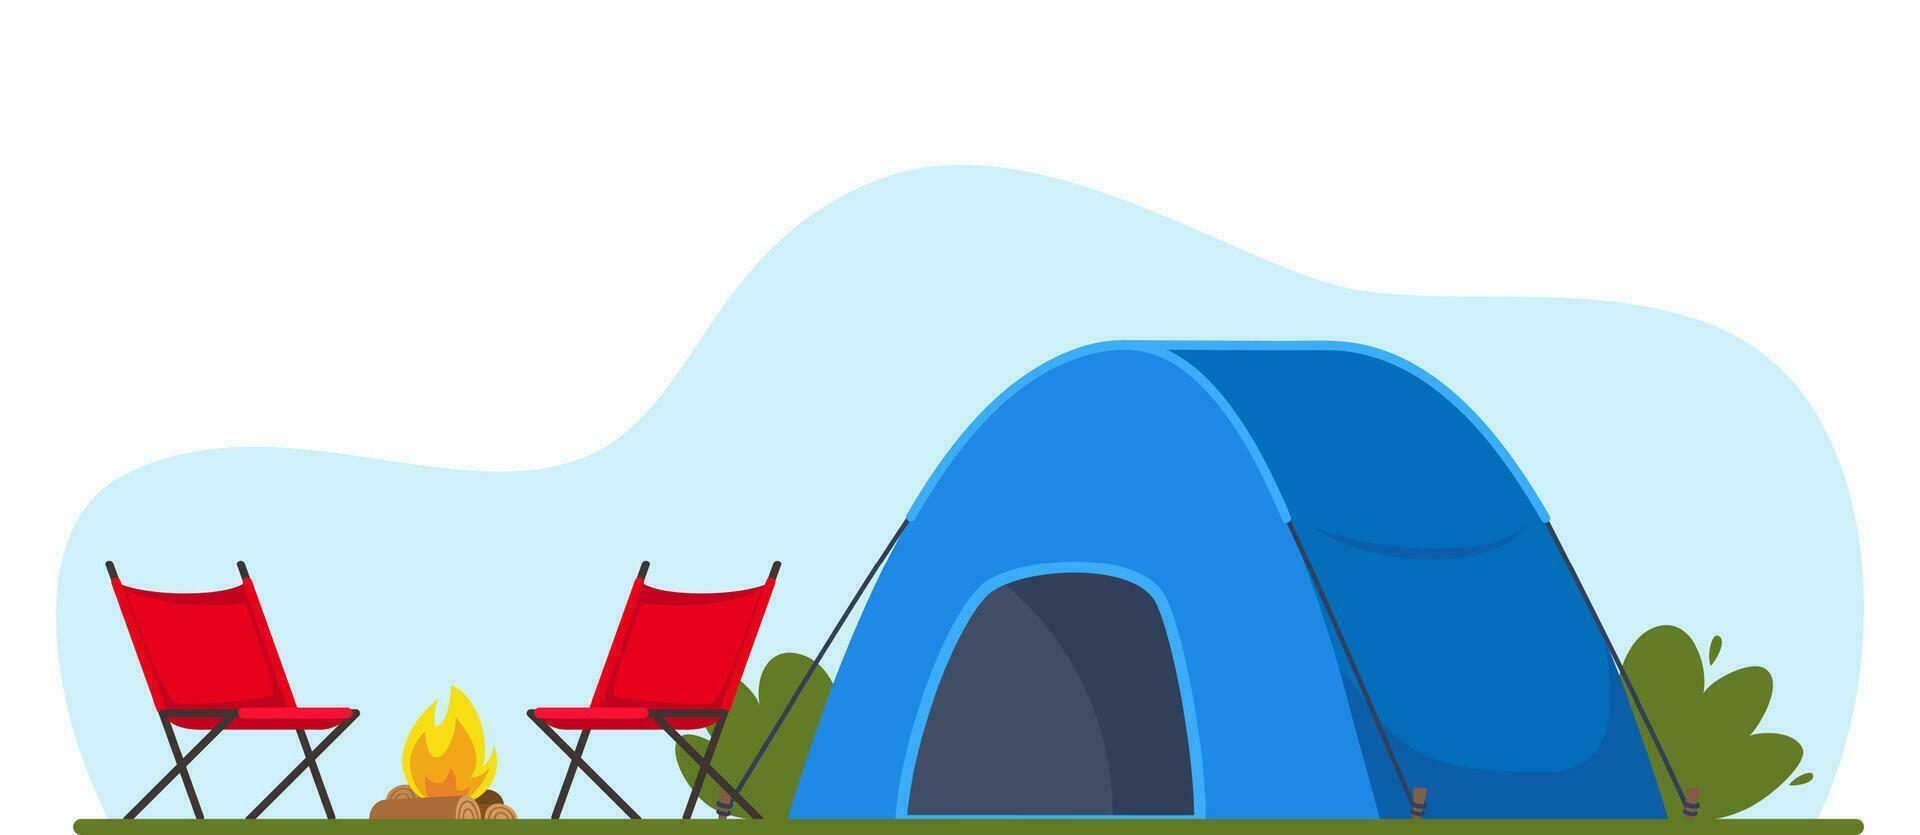 azul barraca, fogueira e cadeiras. bandeira, poster para escalando, caminhada, rastreamento esporte, aventura turismo, viagem, mochilão. vetor ilustração.